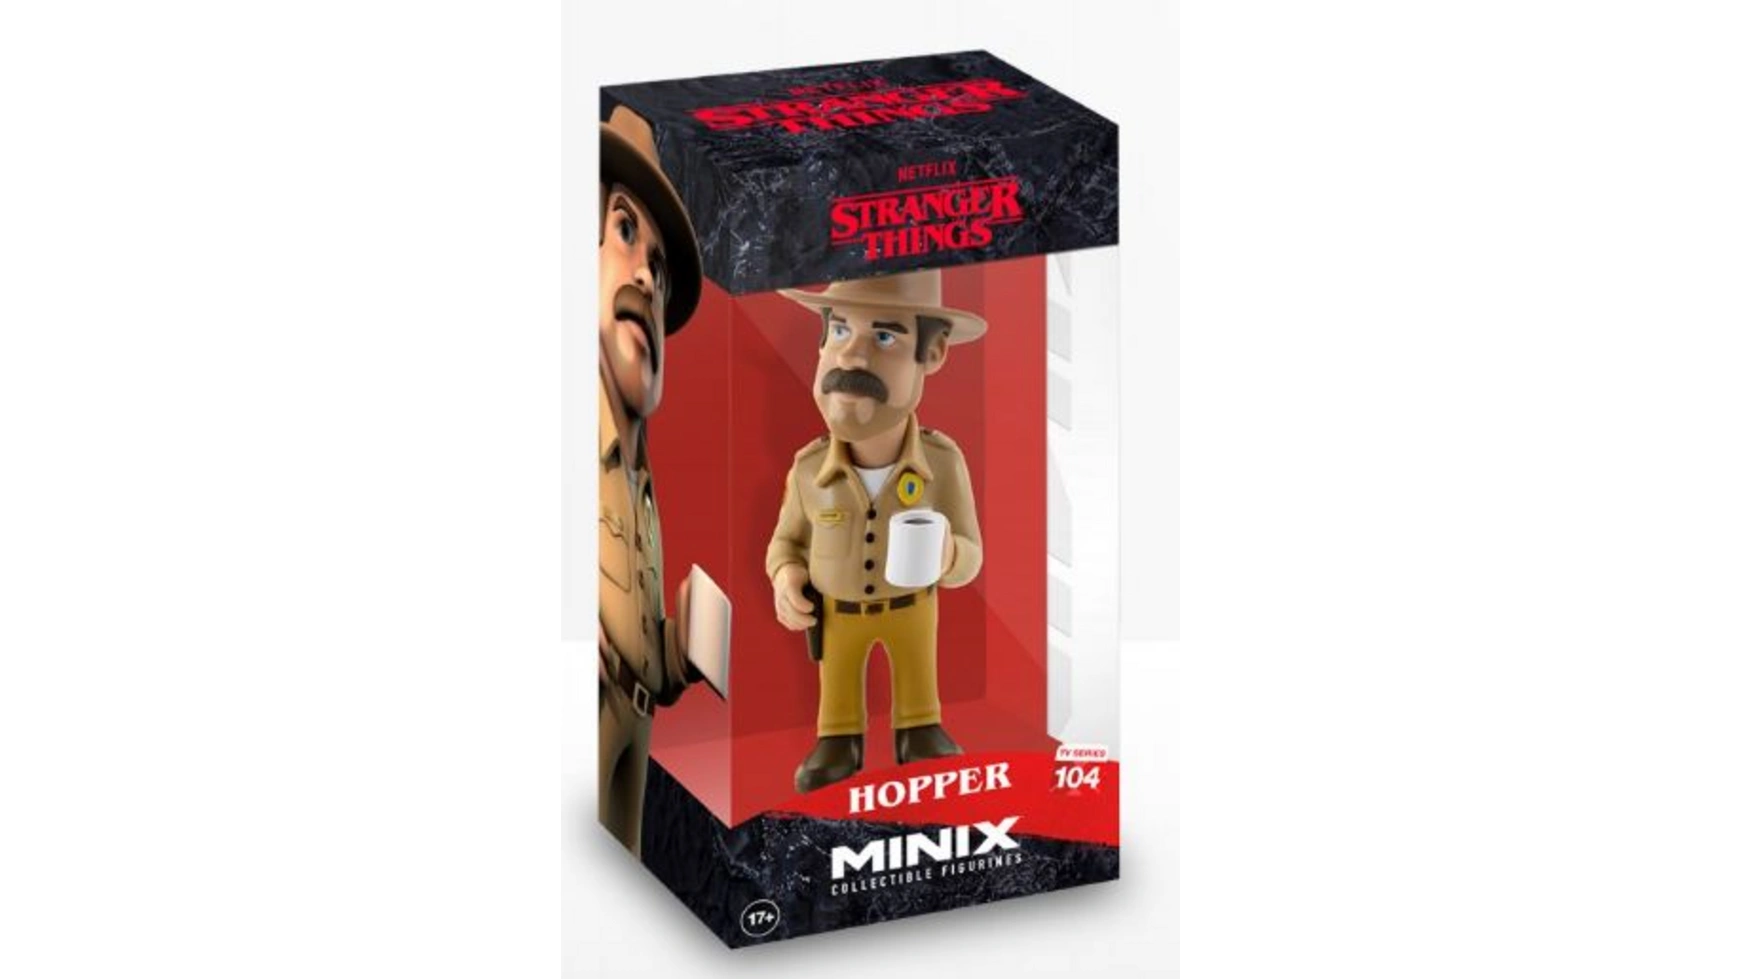 Minix Stranger Things Фигурка Хоппер 12 см цена и фото